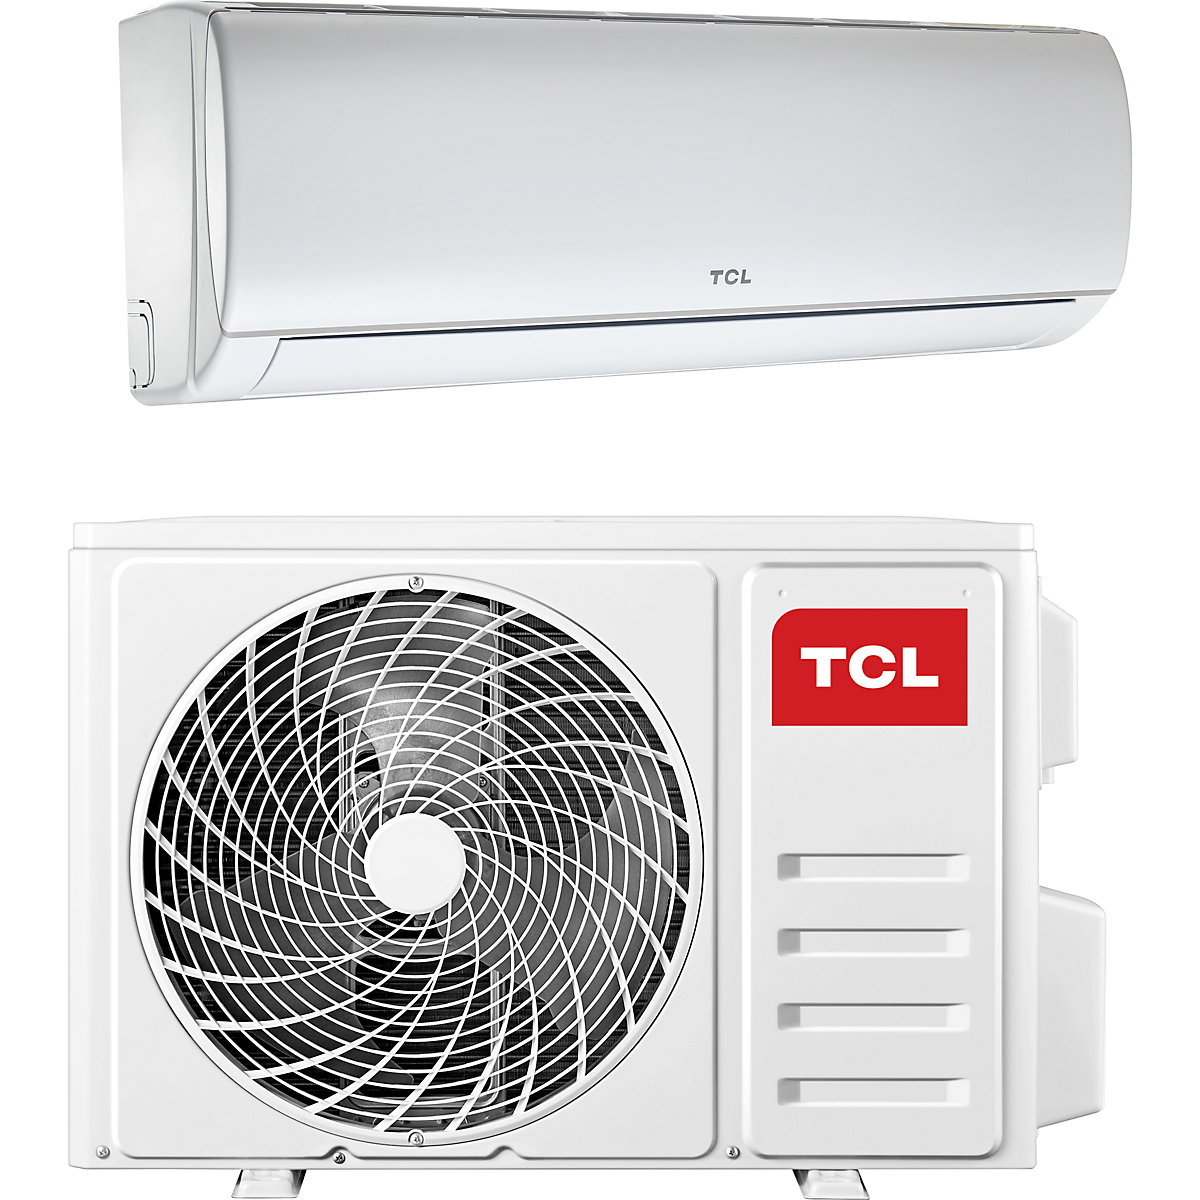 12000 BTU split air conditioner - TCL